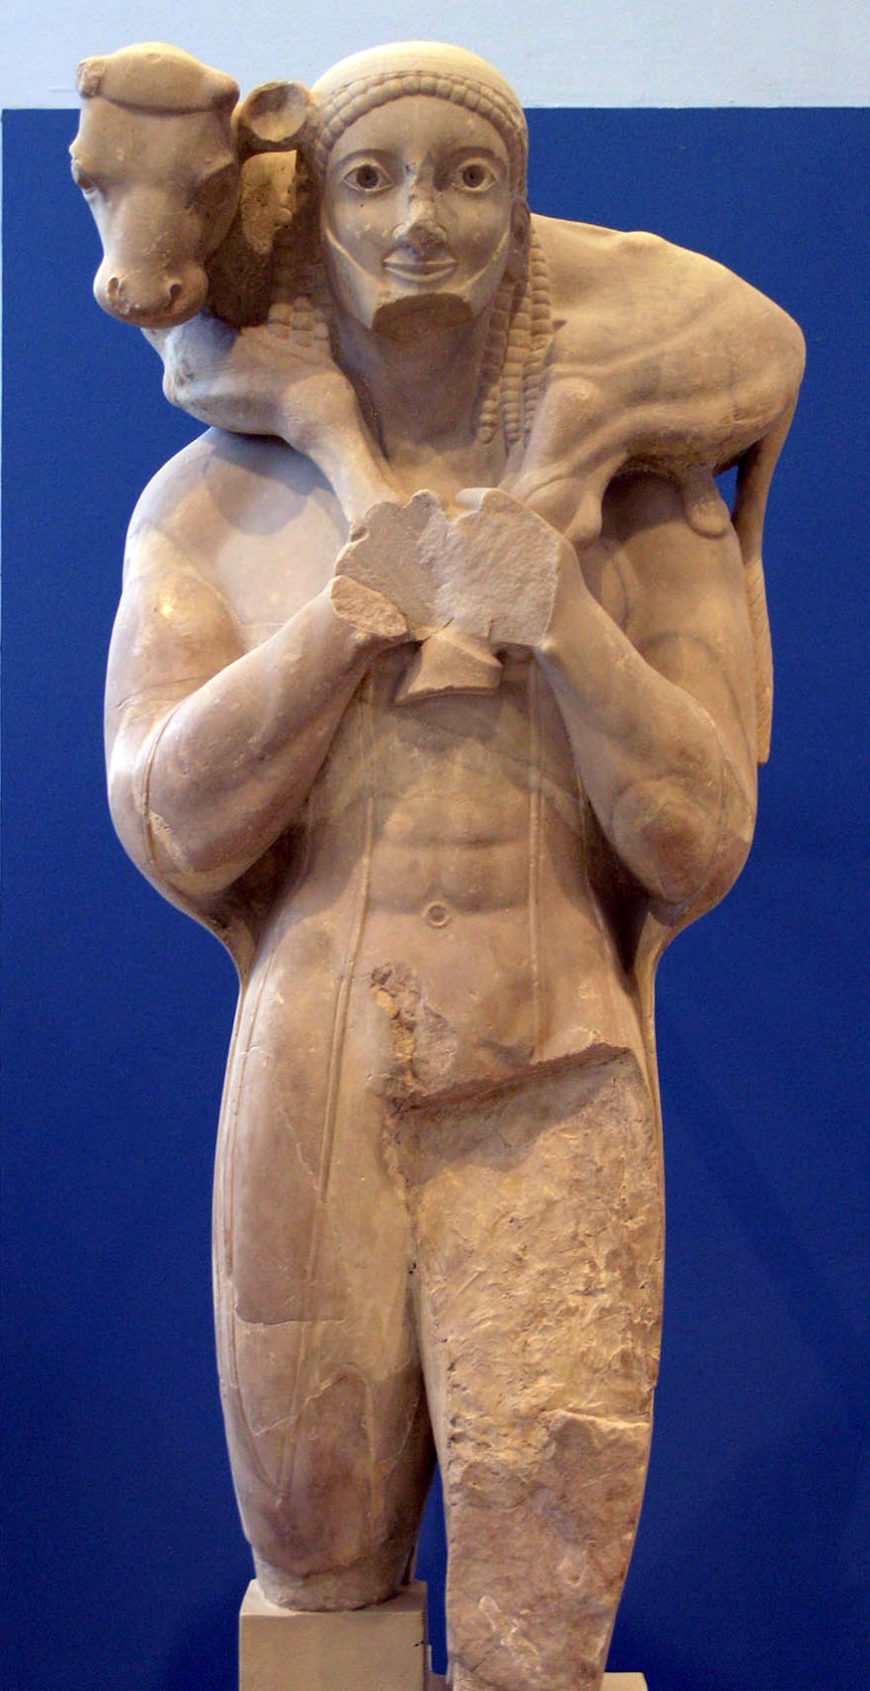 Мошофор або телячий носій, c. 570 до н.е., мармур 165 м заввишки (Музей Афінського Акрополя; фото: Marysas, CC BY-SA 2.5)